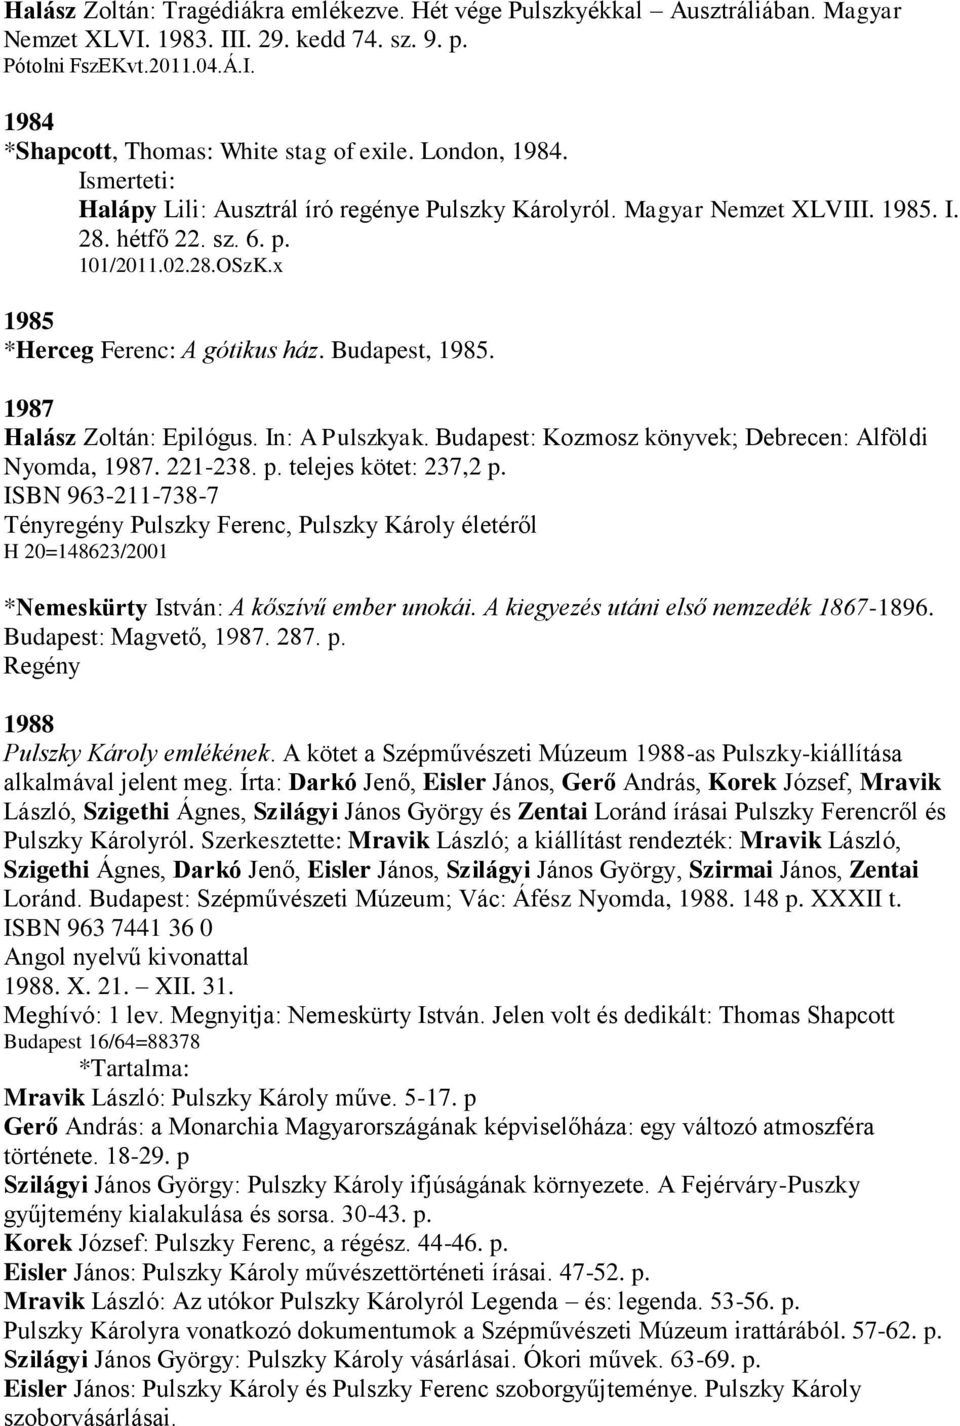 Budapest, 1985. 1987 Halász Zoltán: Epilógus. In: A Pulszkyak. Budapest: Kozmosz könyvek; Debrecen: Alföldi Nyomda, 1987. 221-238. p. telejes kötet: 237,2 p.